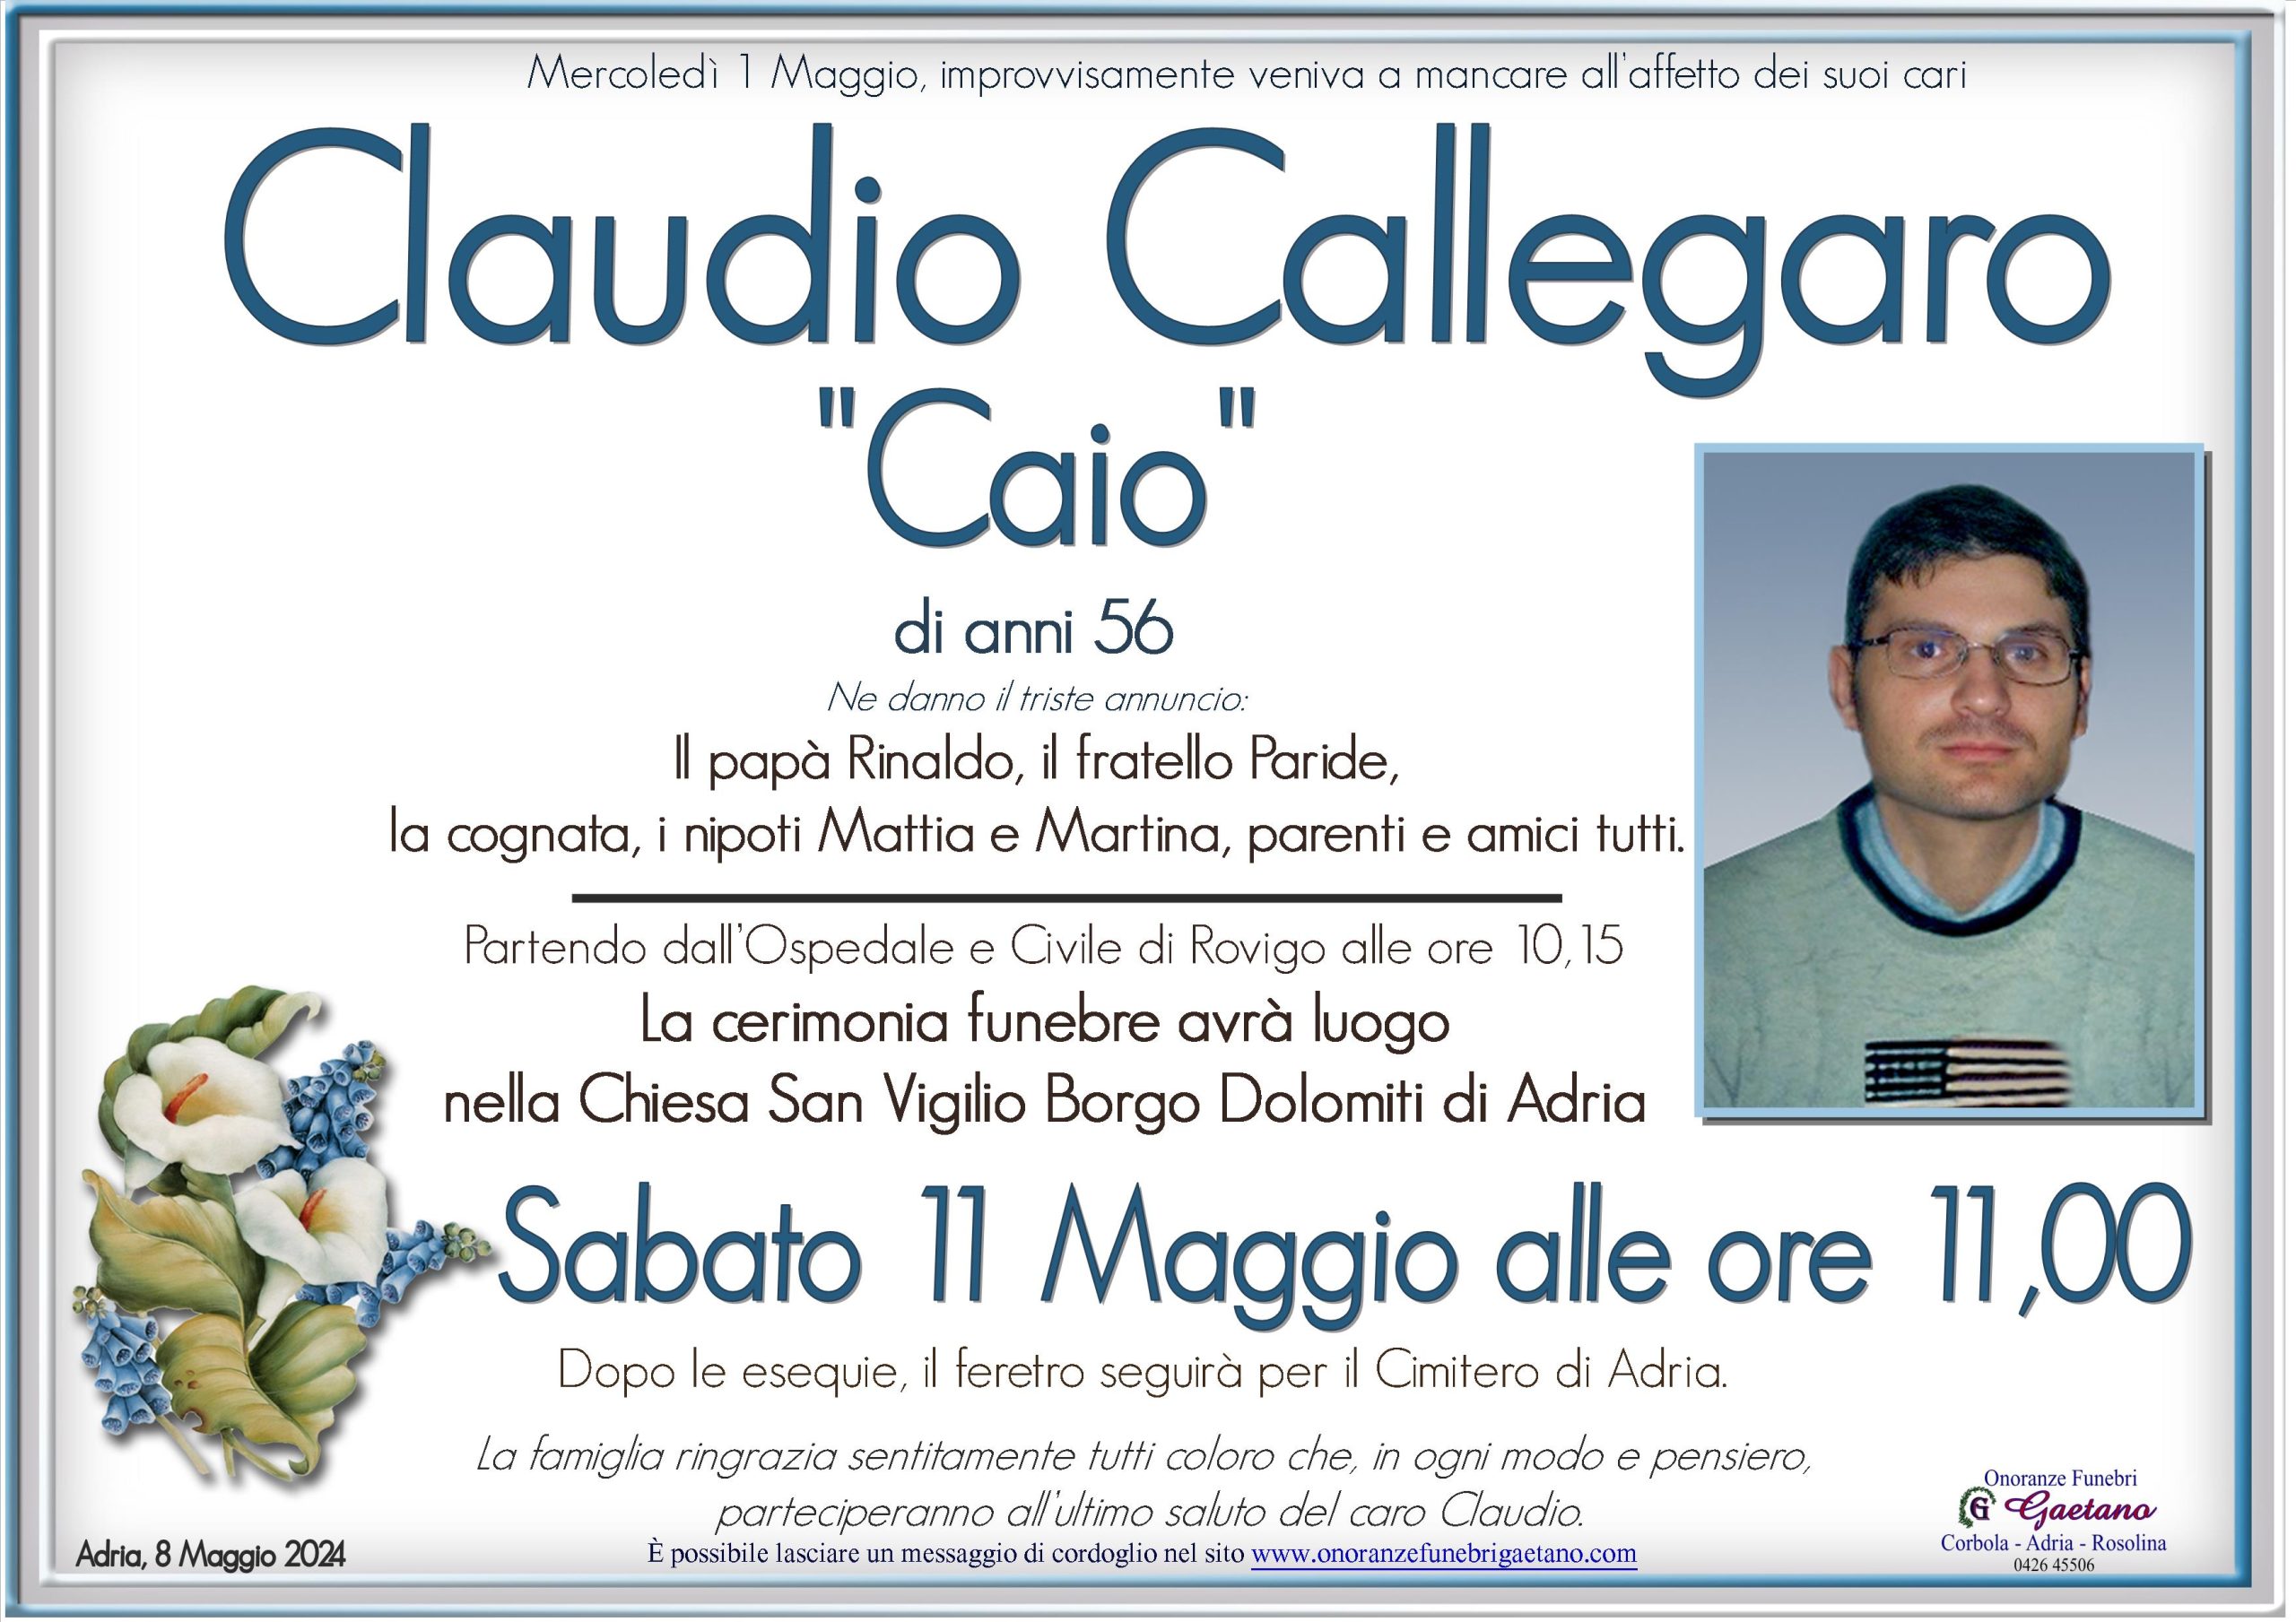 Claudio Callegaro